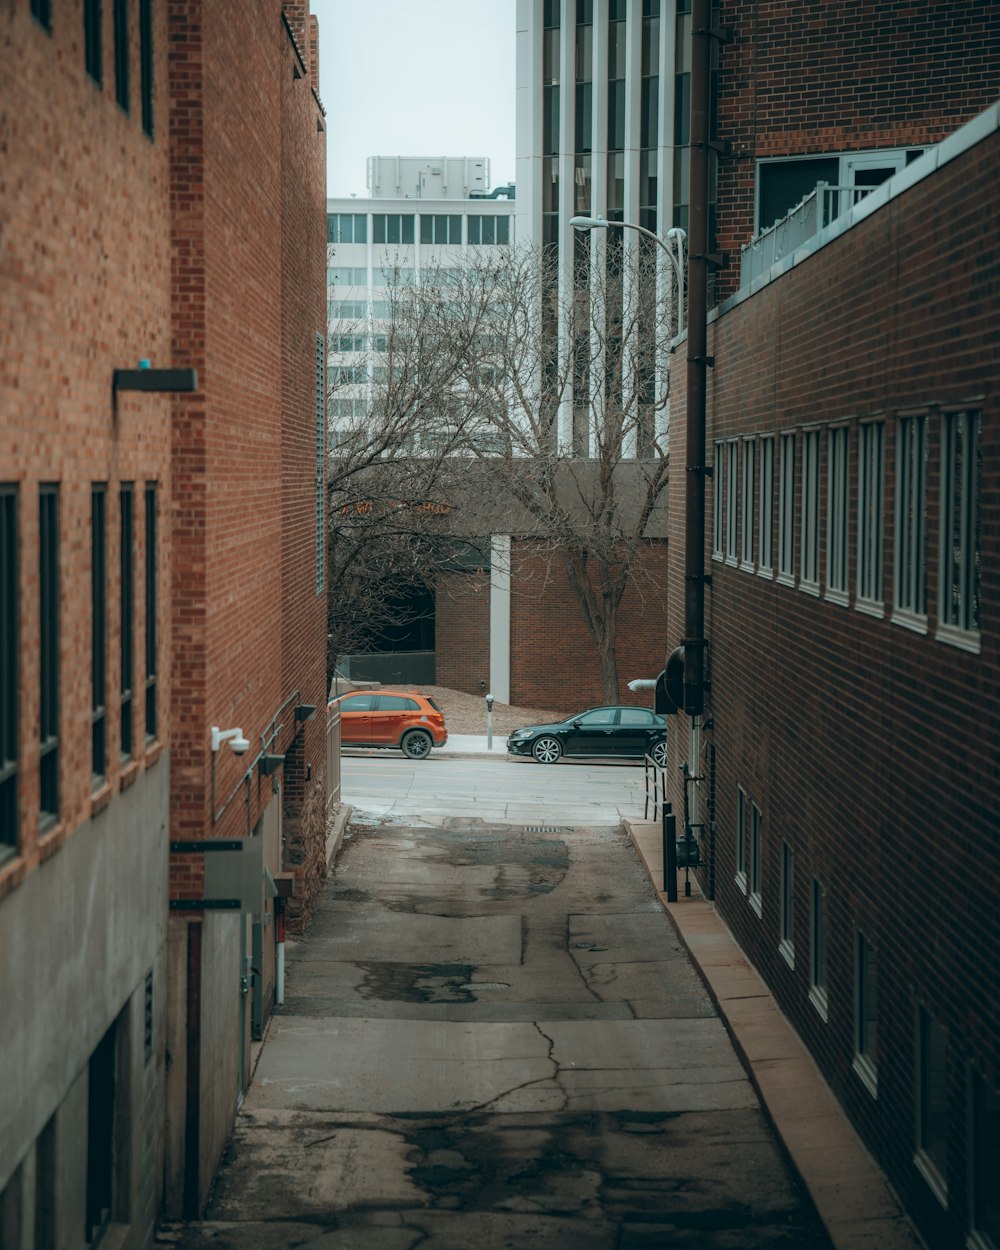 sedã branco estacionado ao lado de edifício de concreto marrom durante o dia